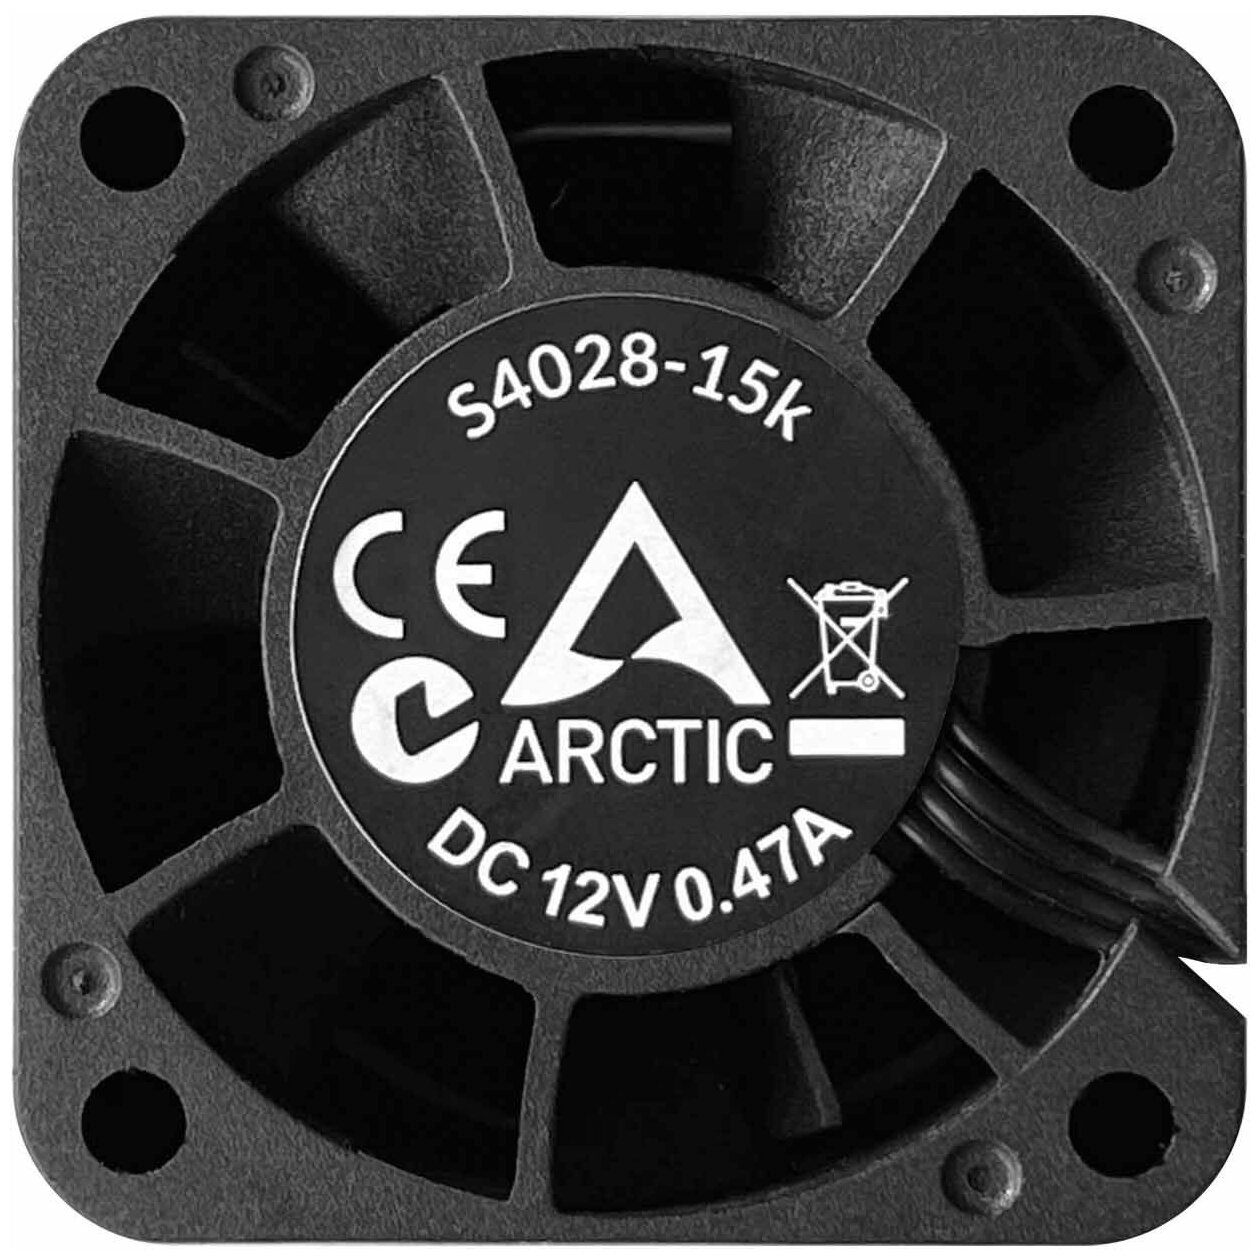 Серверный вентилятор Arctic S4028-6K